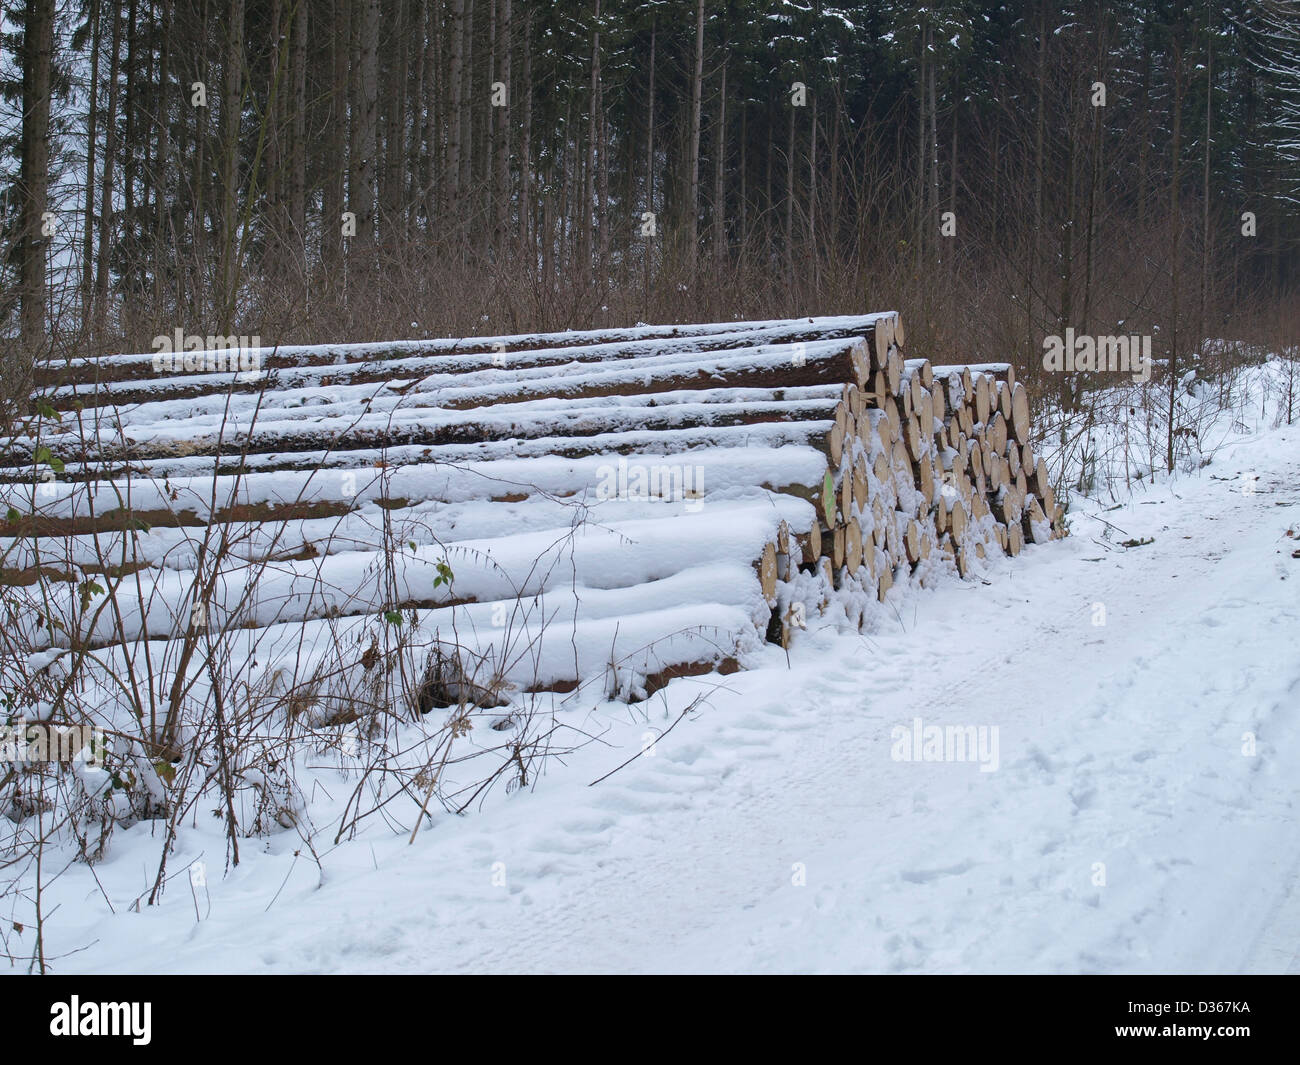 Lumberyard - snowbound log tagliati nel legno / Holzlager - verschneite, gefällte Baumstämme im Wald Foto Stock